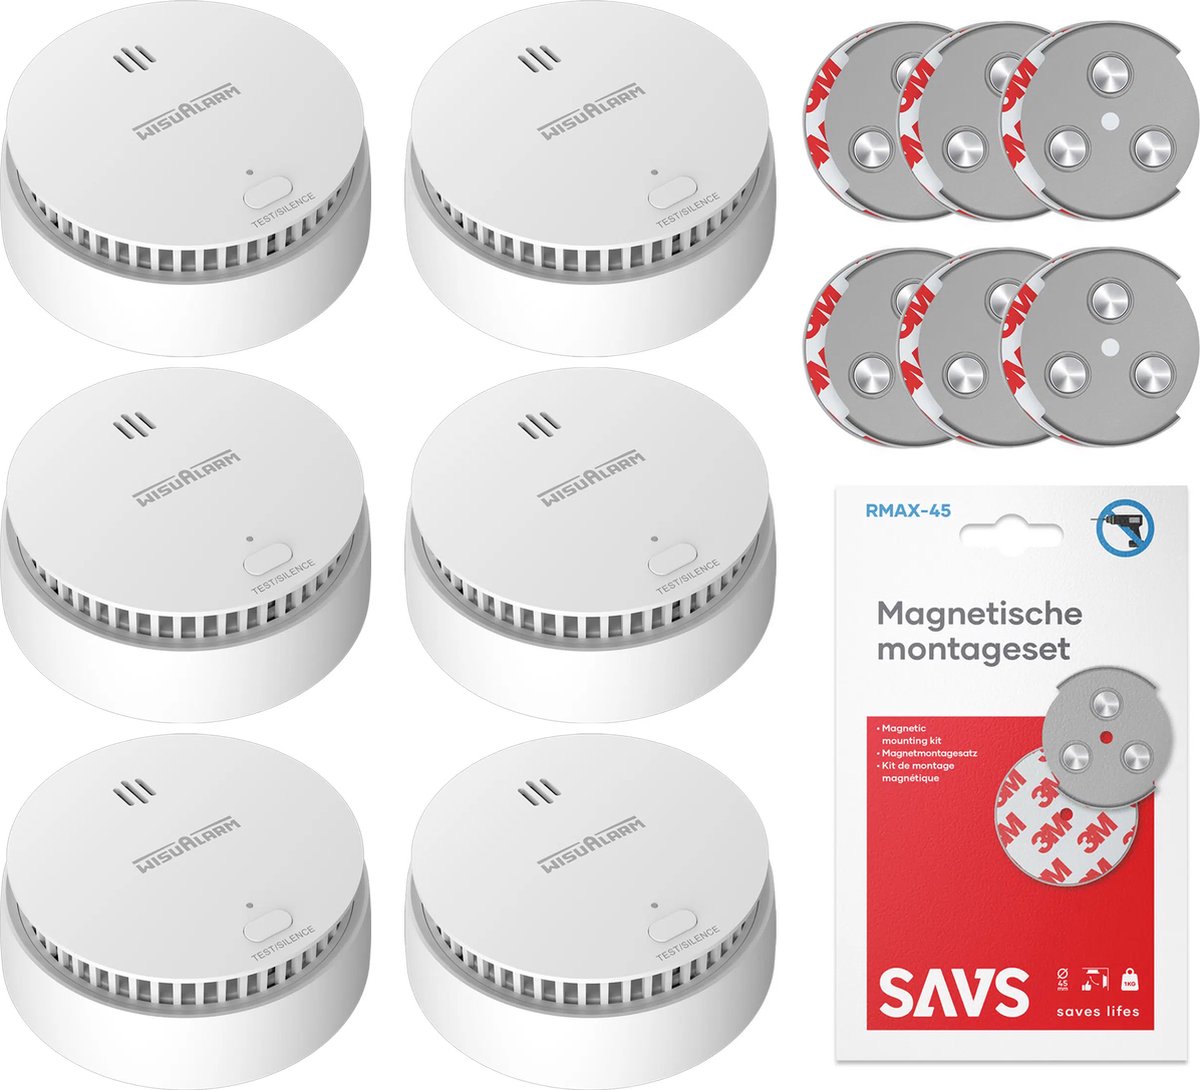 WisuAlarm SA20-A Rookmelder met magneet montage - 6 Rookmelders - 10 jaar batterij - Kan in de buurt van keuken en badkamer - Voldoet aan Europese norm - Brandalarm zonder boren